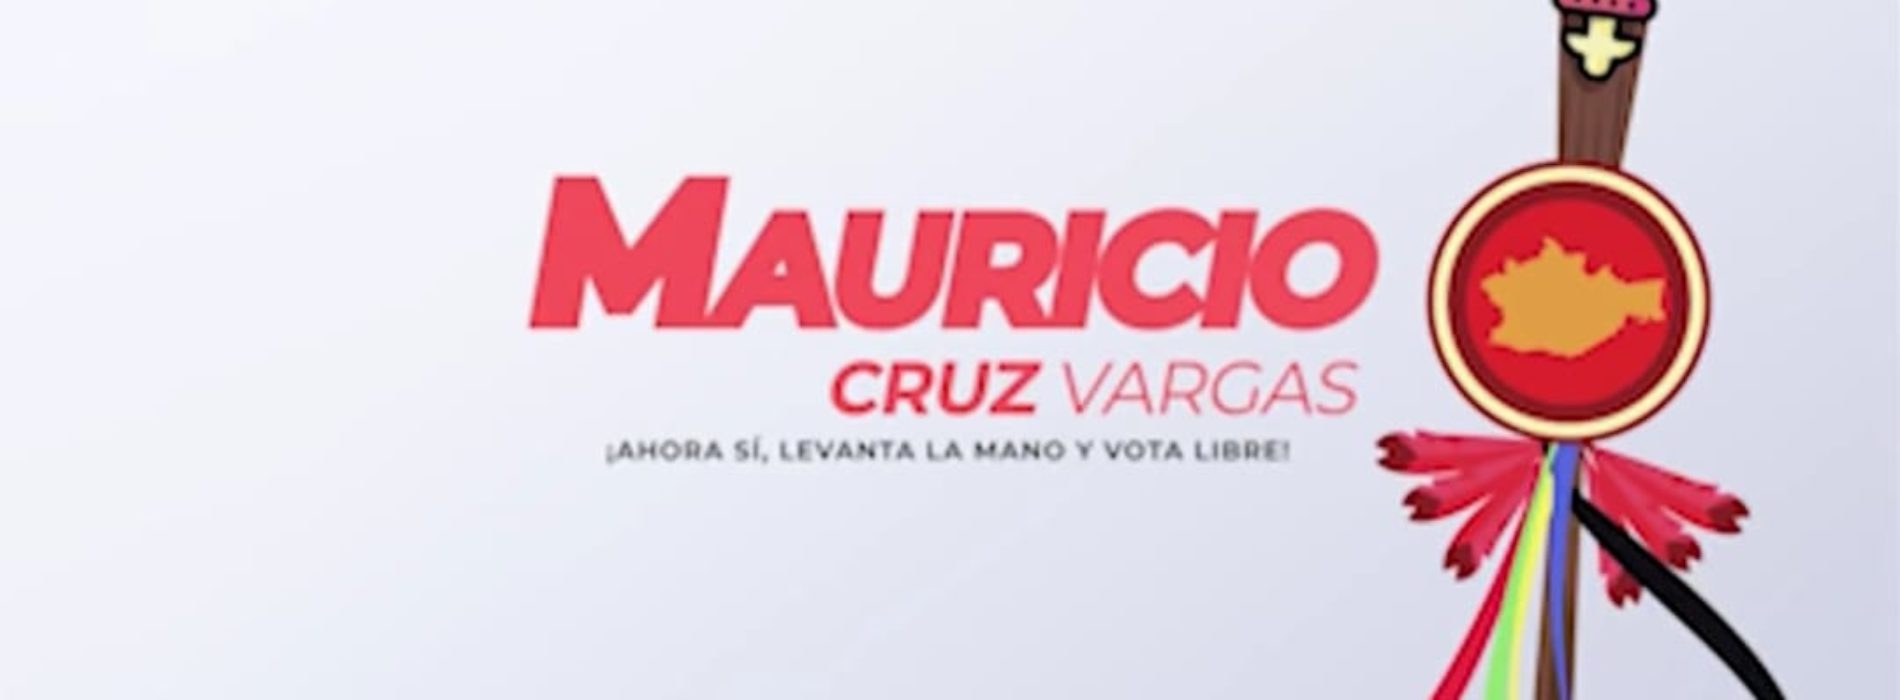 Mauricio Cruz Vargas, Candidato Independiente Indígena por la Gubernatura de Oaxaca!!